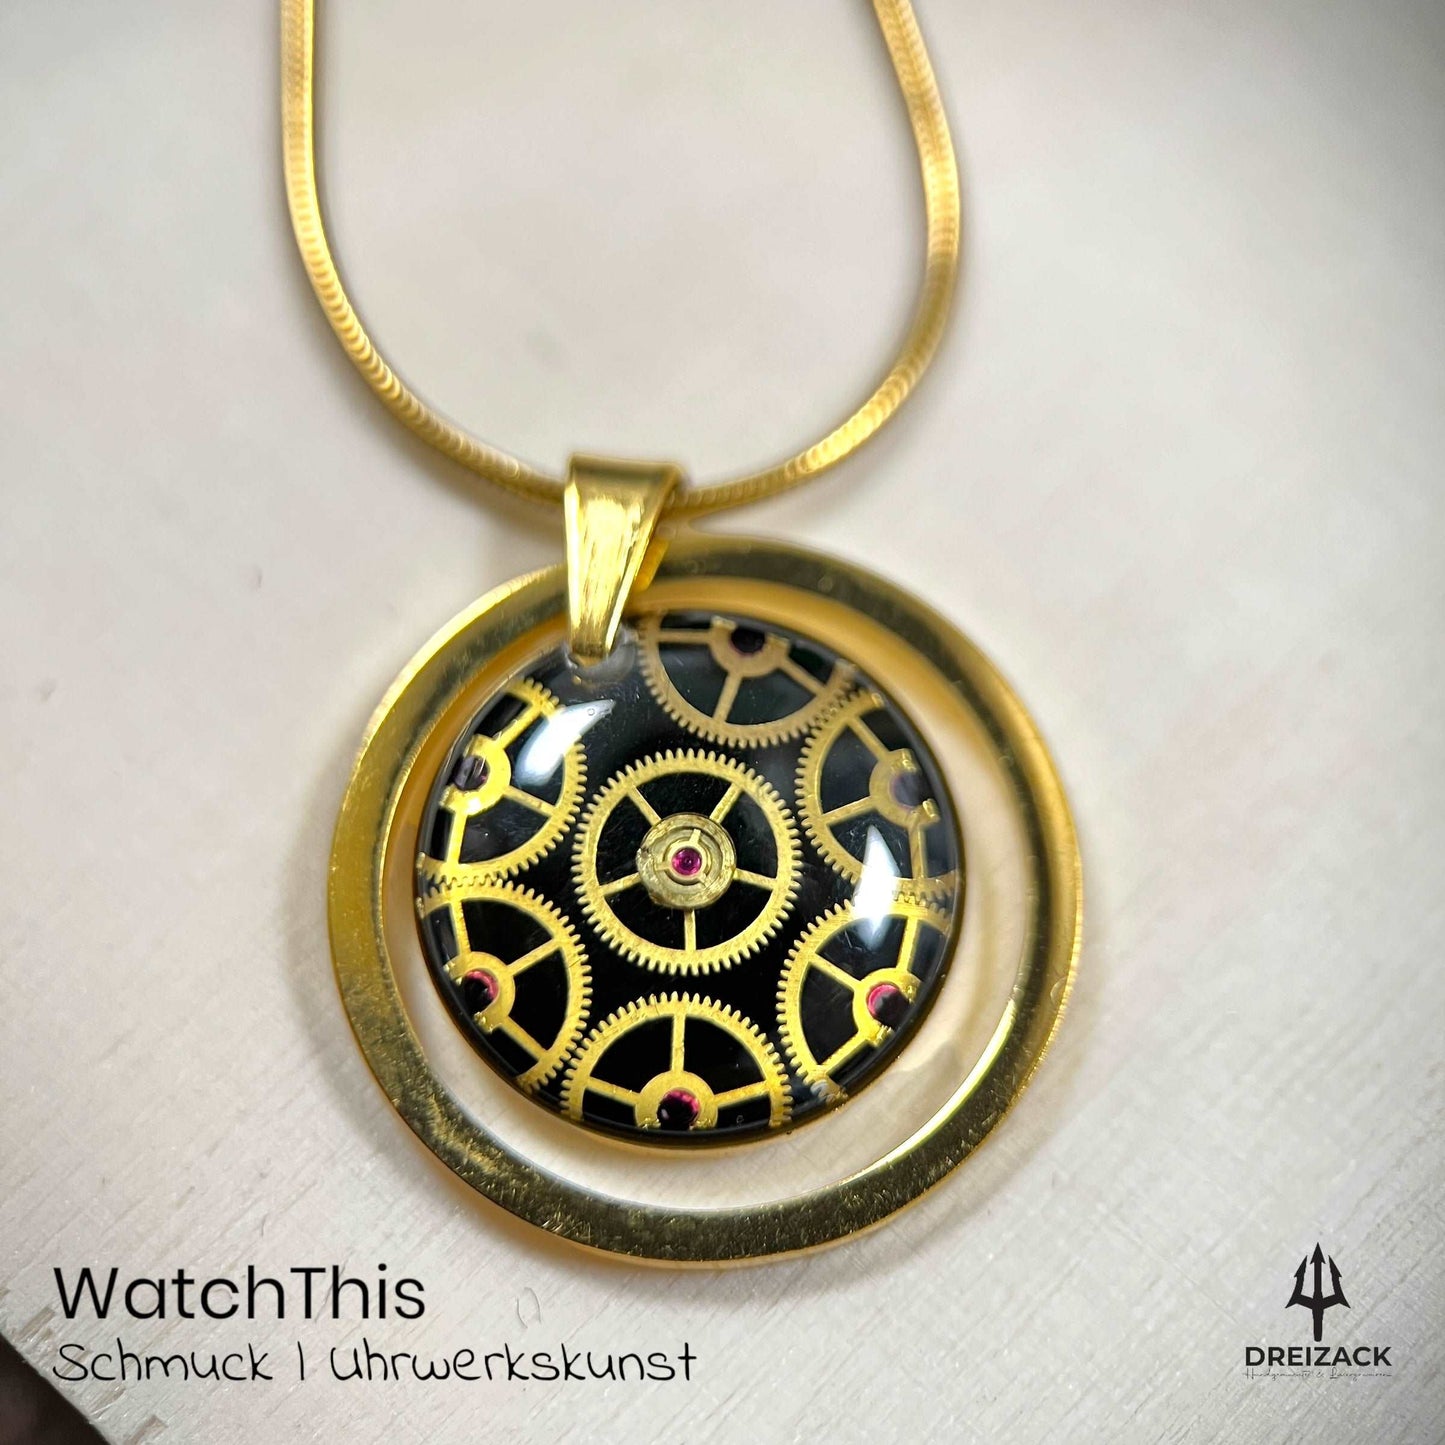 Halsketten von WatchThis - Zeitlose Eleganz aus Uhrwerken Gold mit Rahmen | David Schmuck WatchThis oesterreich handgemachte geschenke in wien